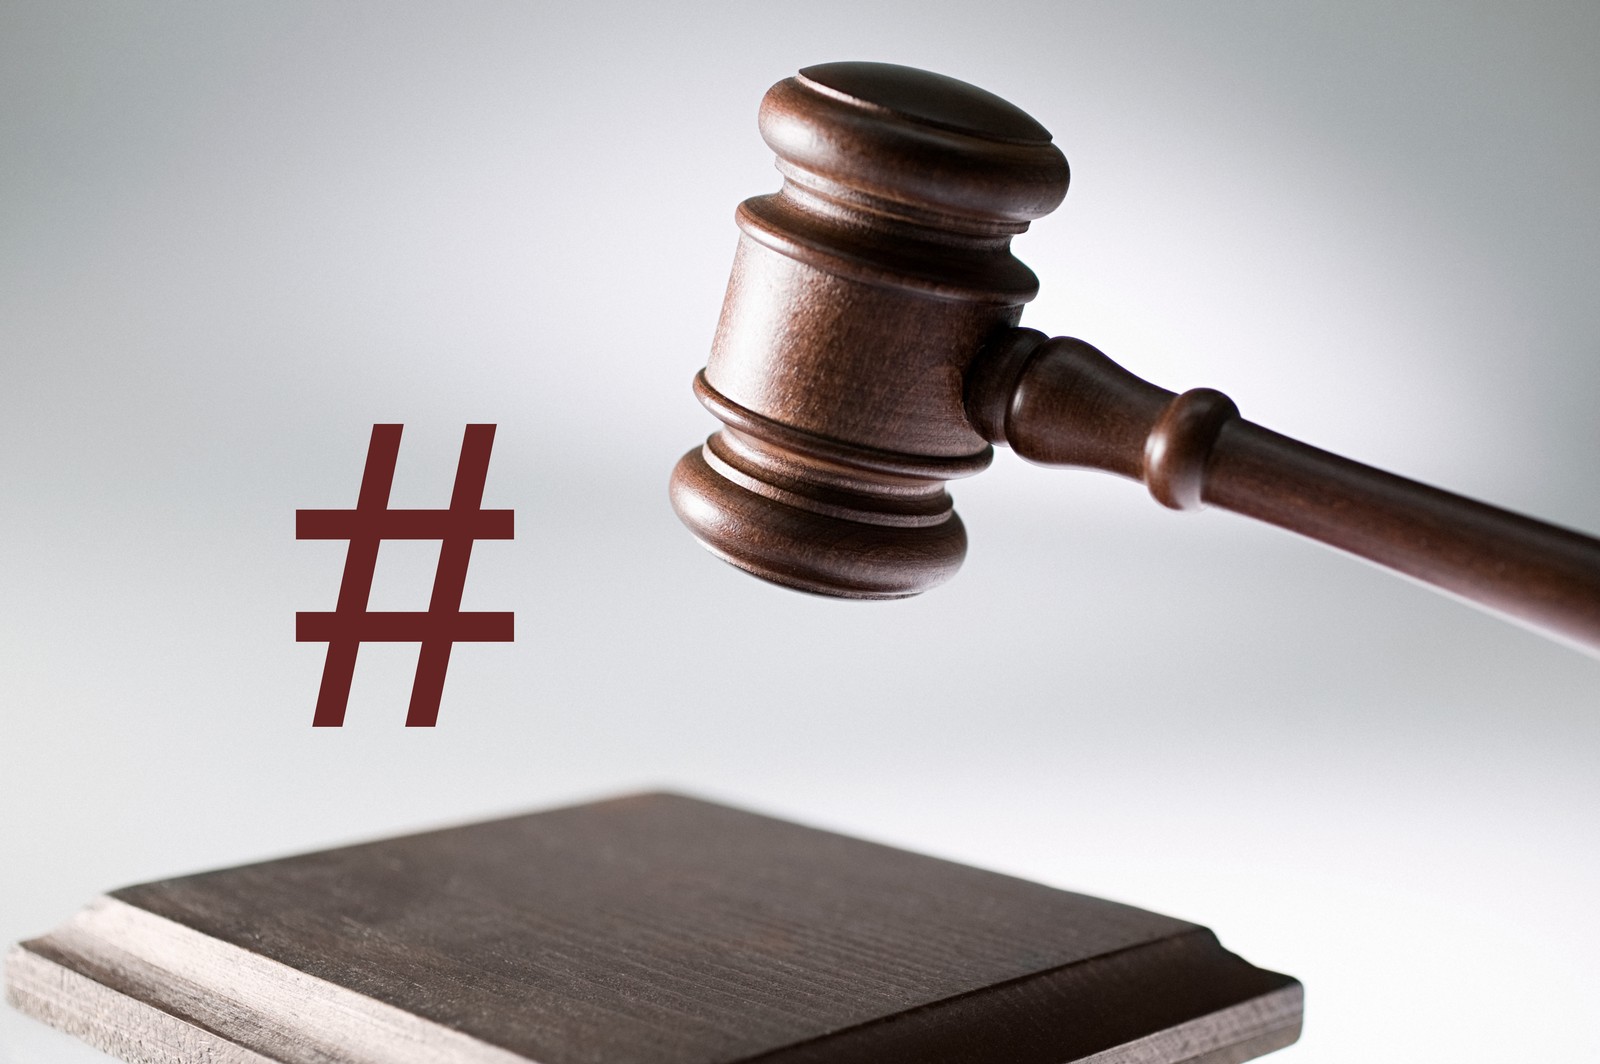 Ein Hashtag #ad reicht nicht aus, urteilten die Richter des OLG Celle.